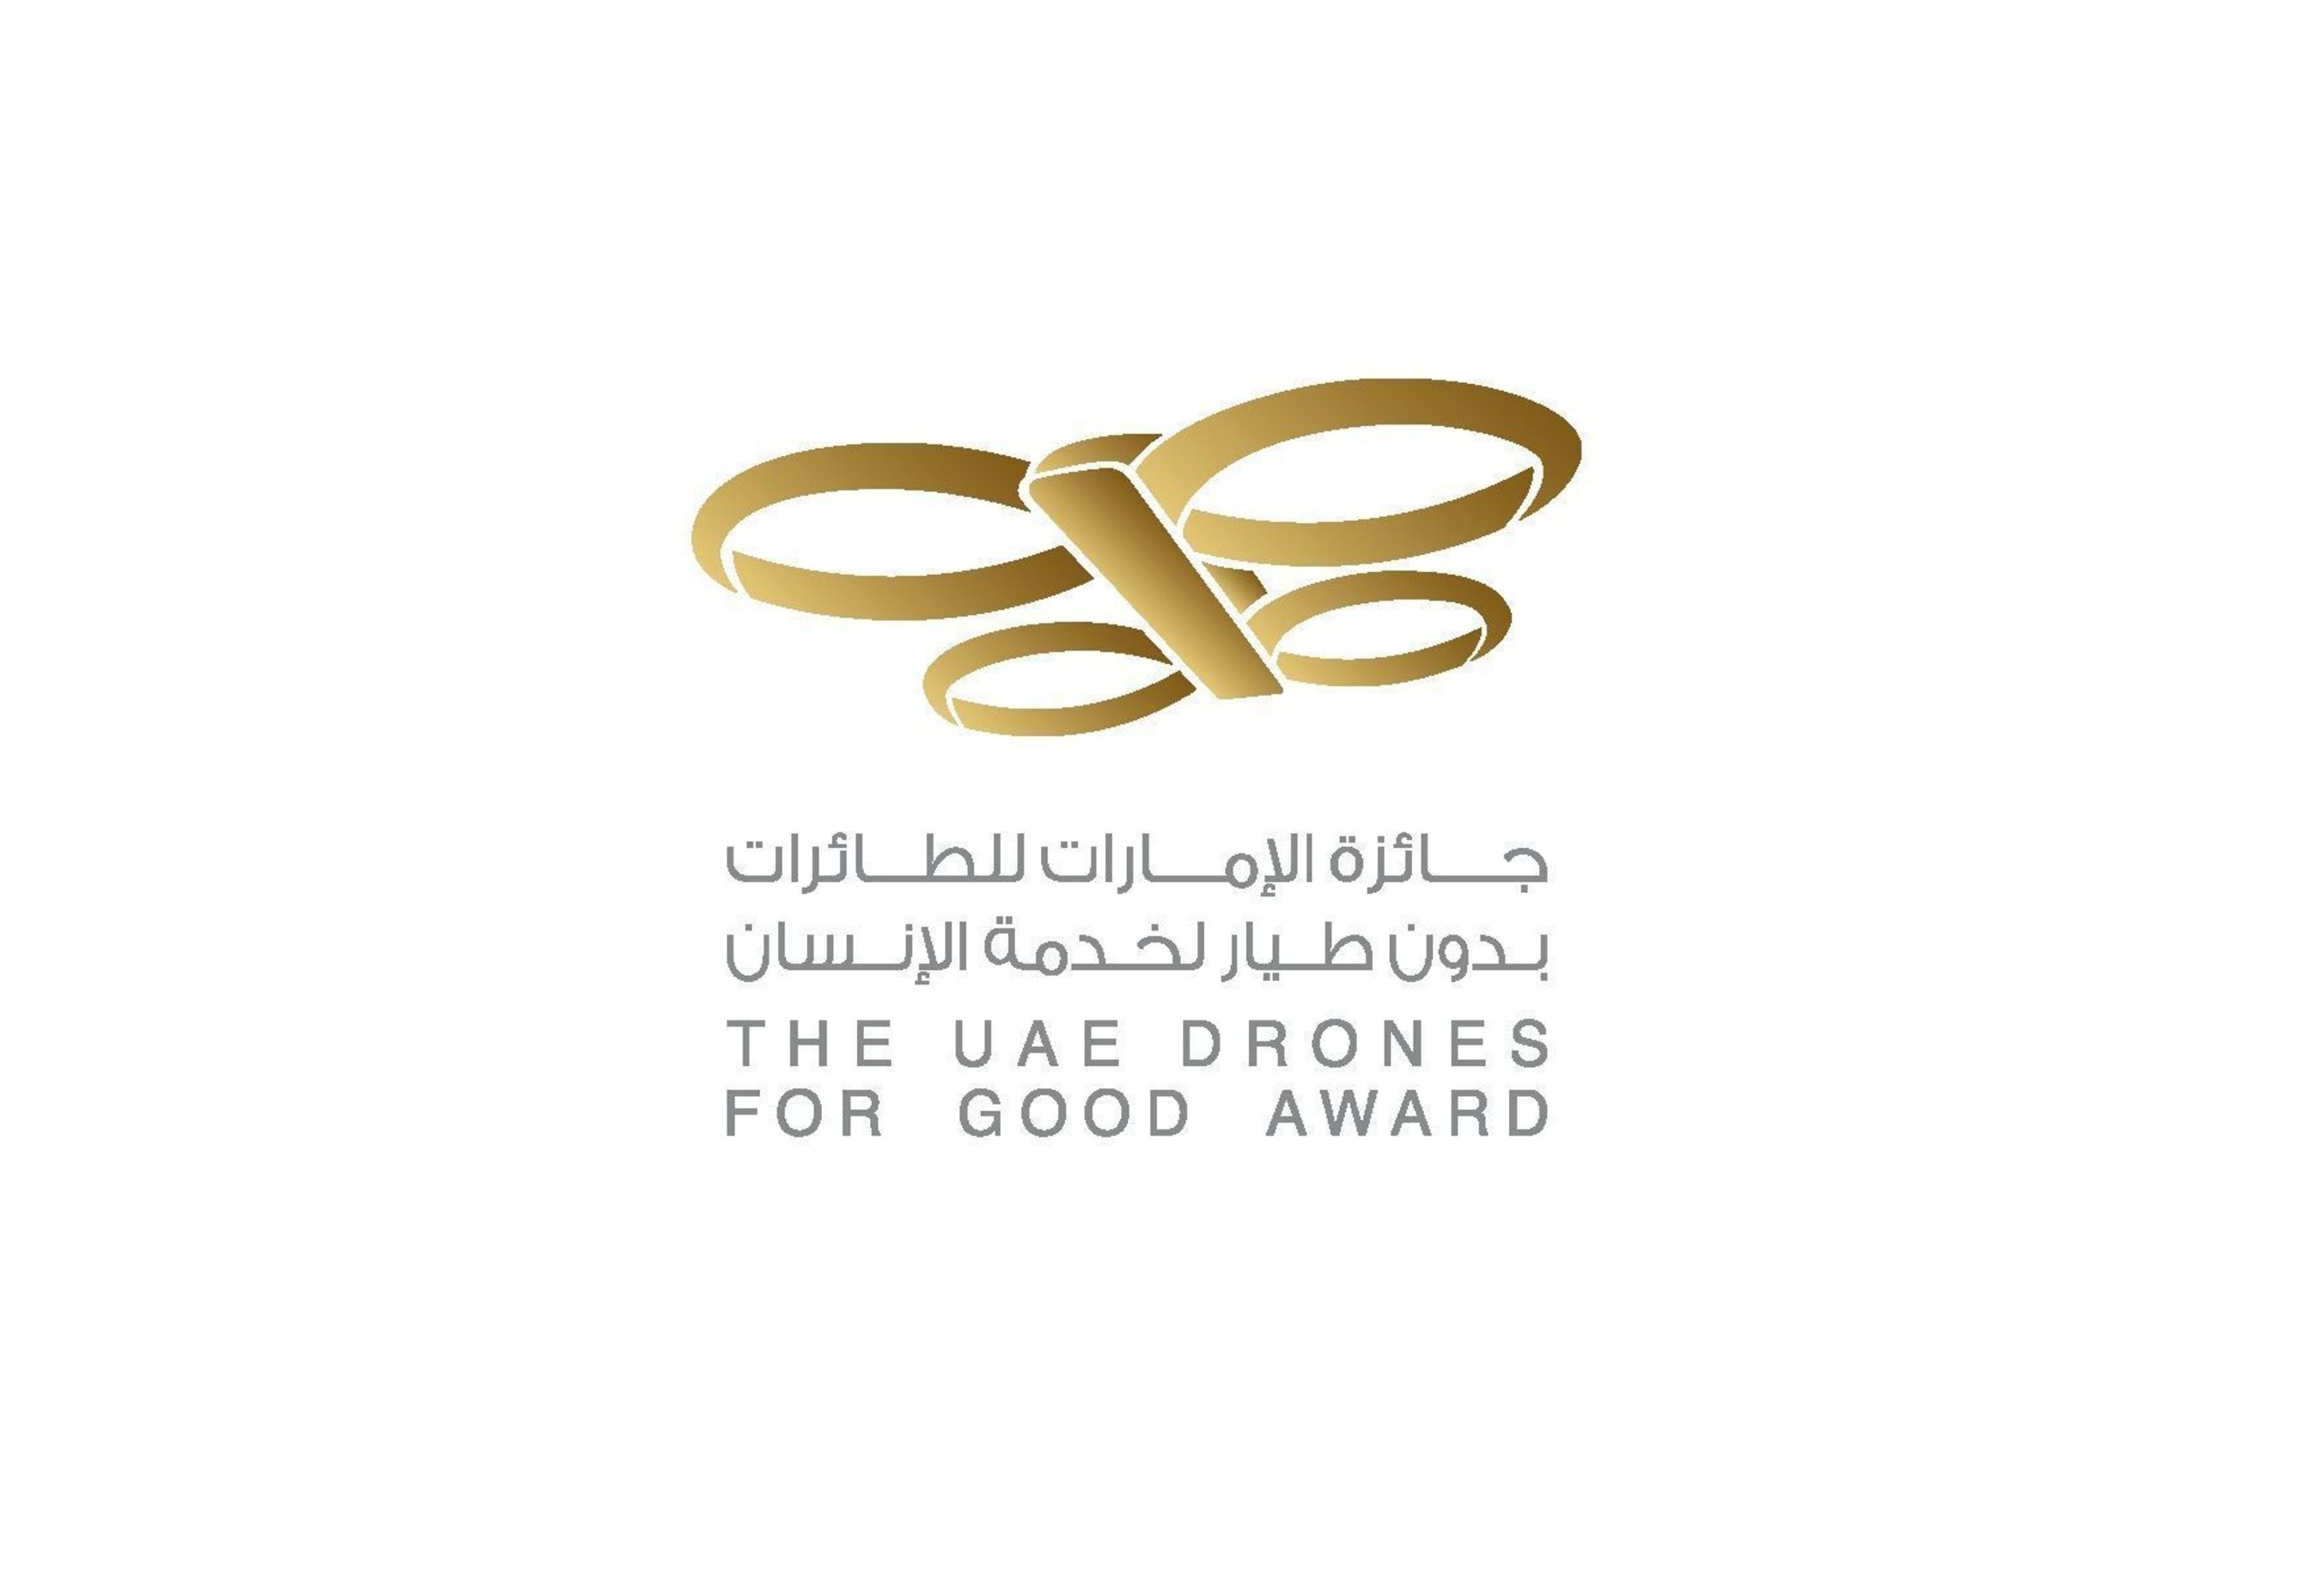 UAE Drones for Good Award (PRNewsFoto/The 'UAE Drones for Good Award')